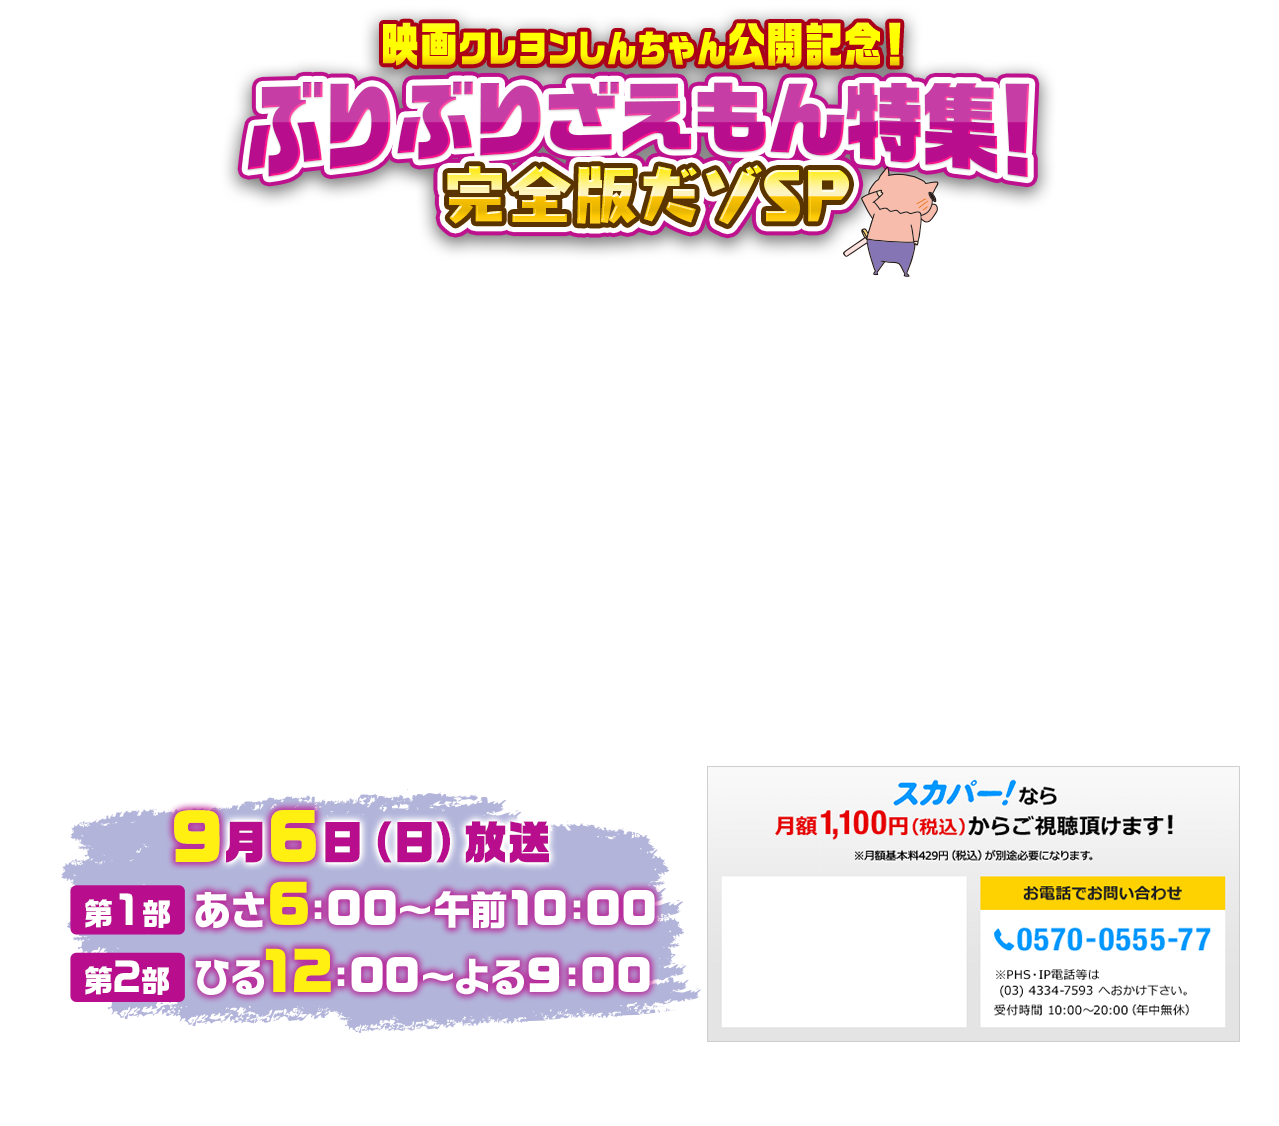 映画クレヨンしんちゃん公開記念 ぶりぶりざえもん特集 完全版だゾsp テレ朝チャンネル